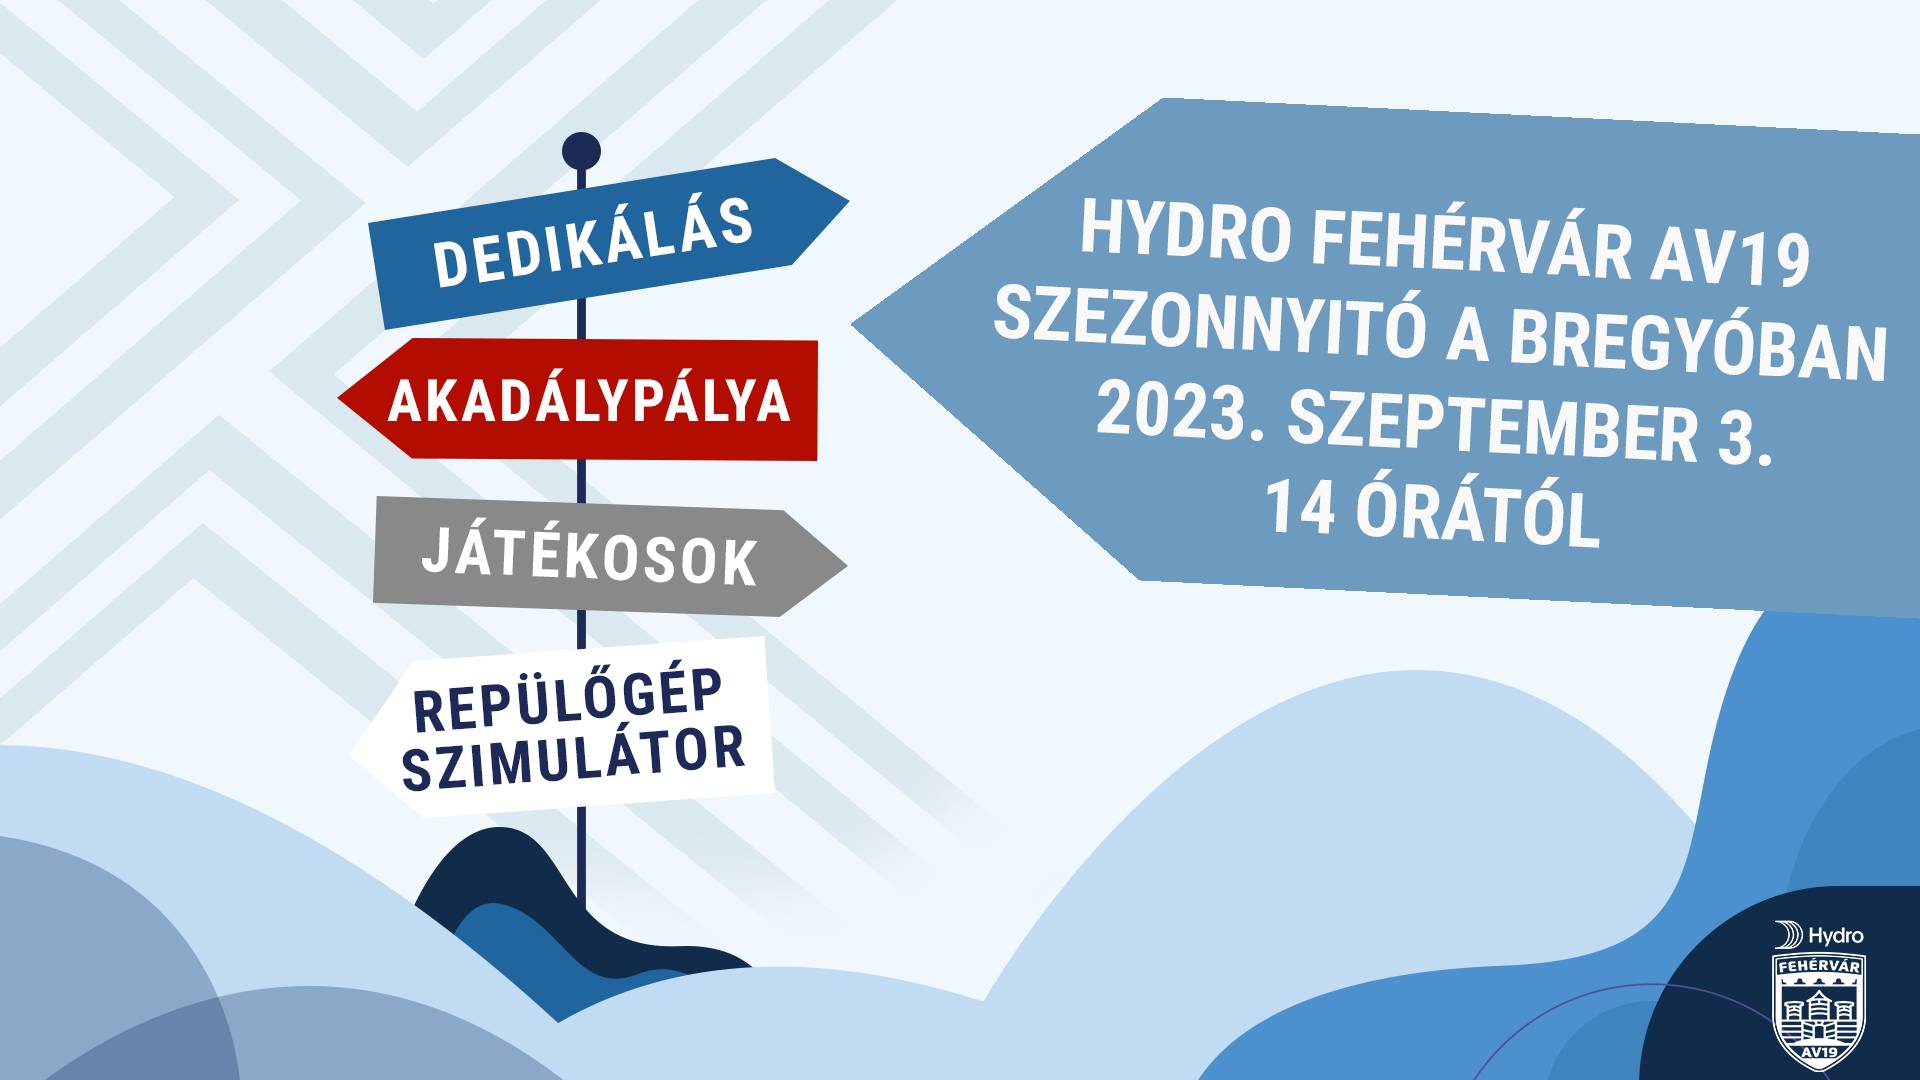 Szezonnyitó szurkolói találkozót rendez vasárnap a Hydro Fehérvár AV19